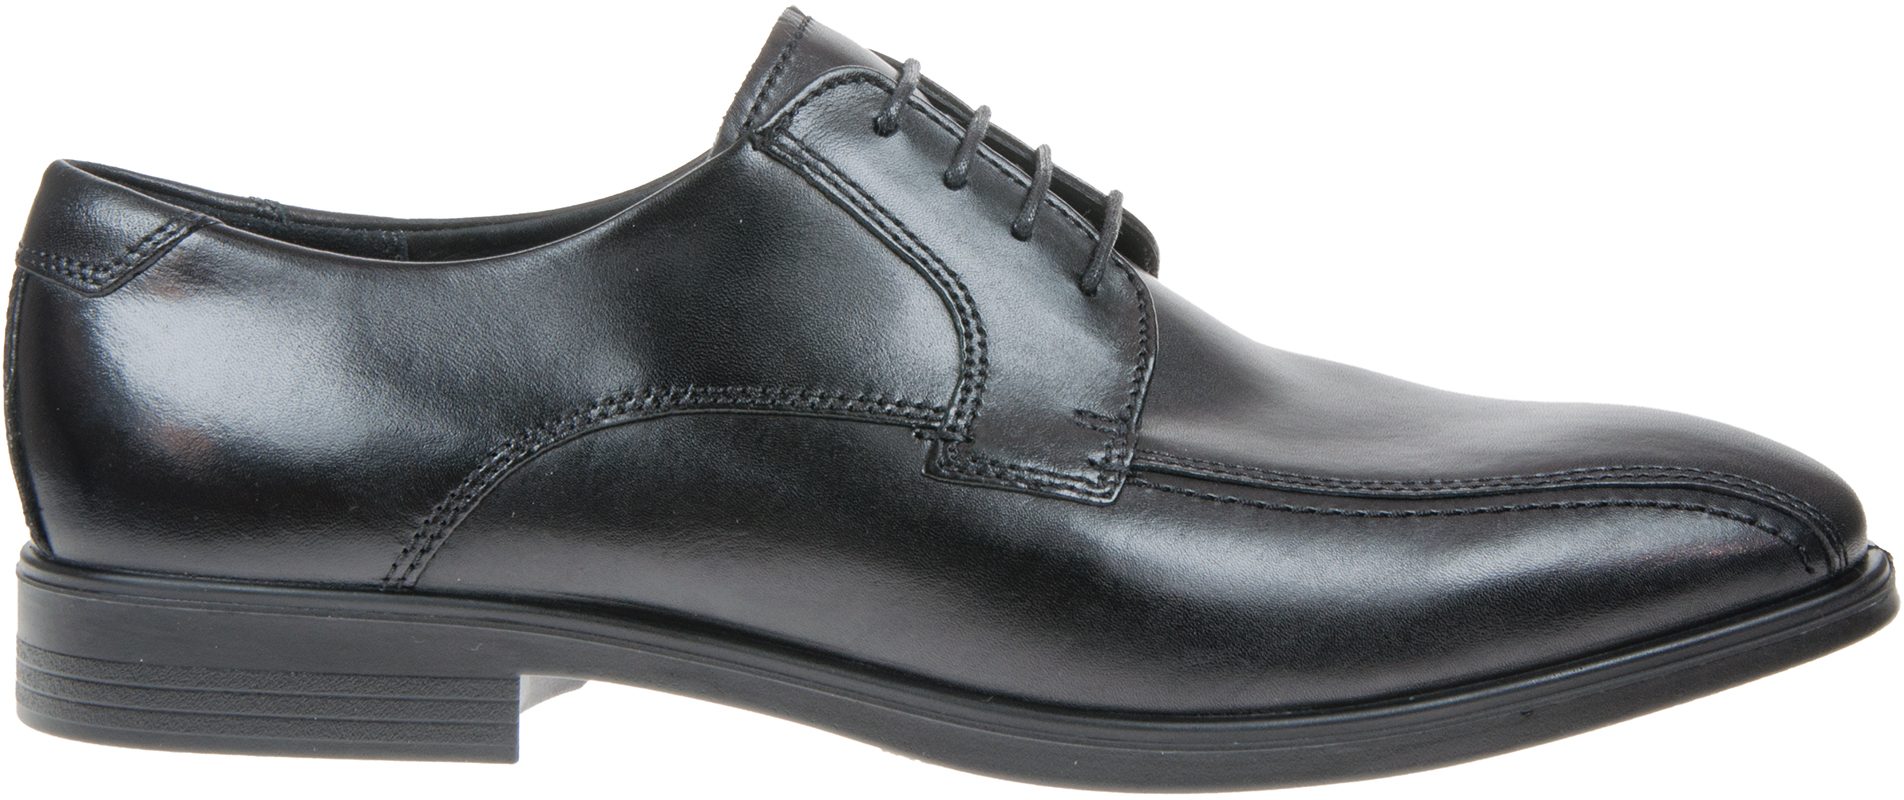 Ecco Melbourne Black 621604 01001 - Formal Shoes - Humphries Shoes